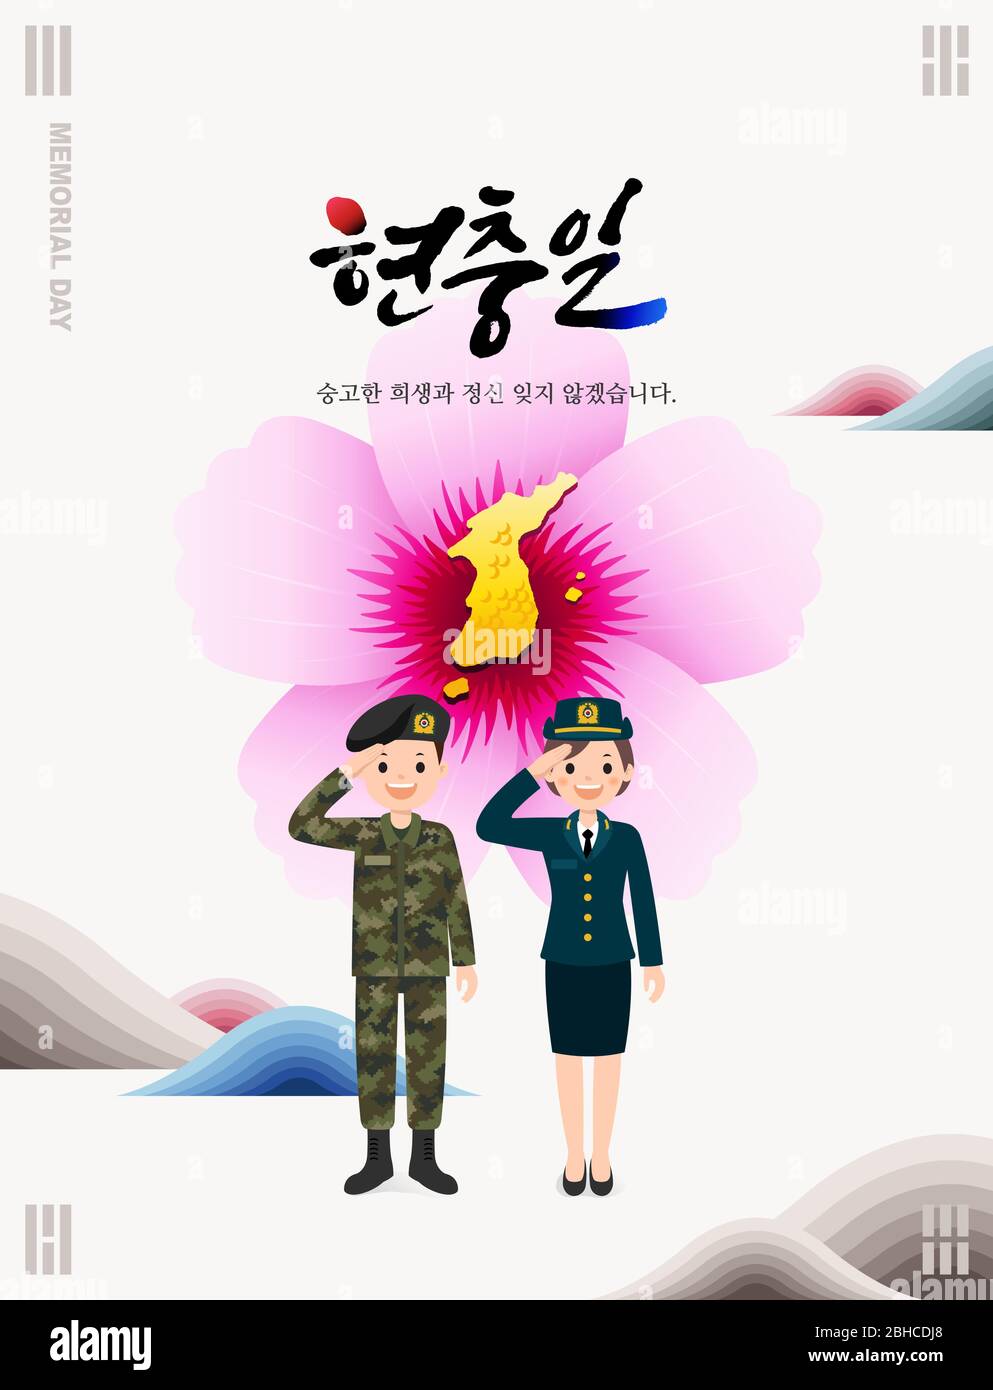 Memorial Day in Korea. Soldiers salute in front of Mugunghwa Flower, Korea map background. Korean Memorial Day, Korean Translation. Stock Vector